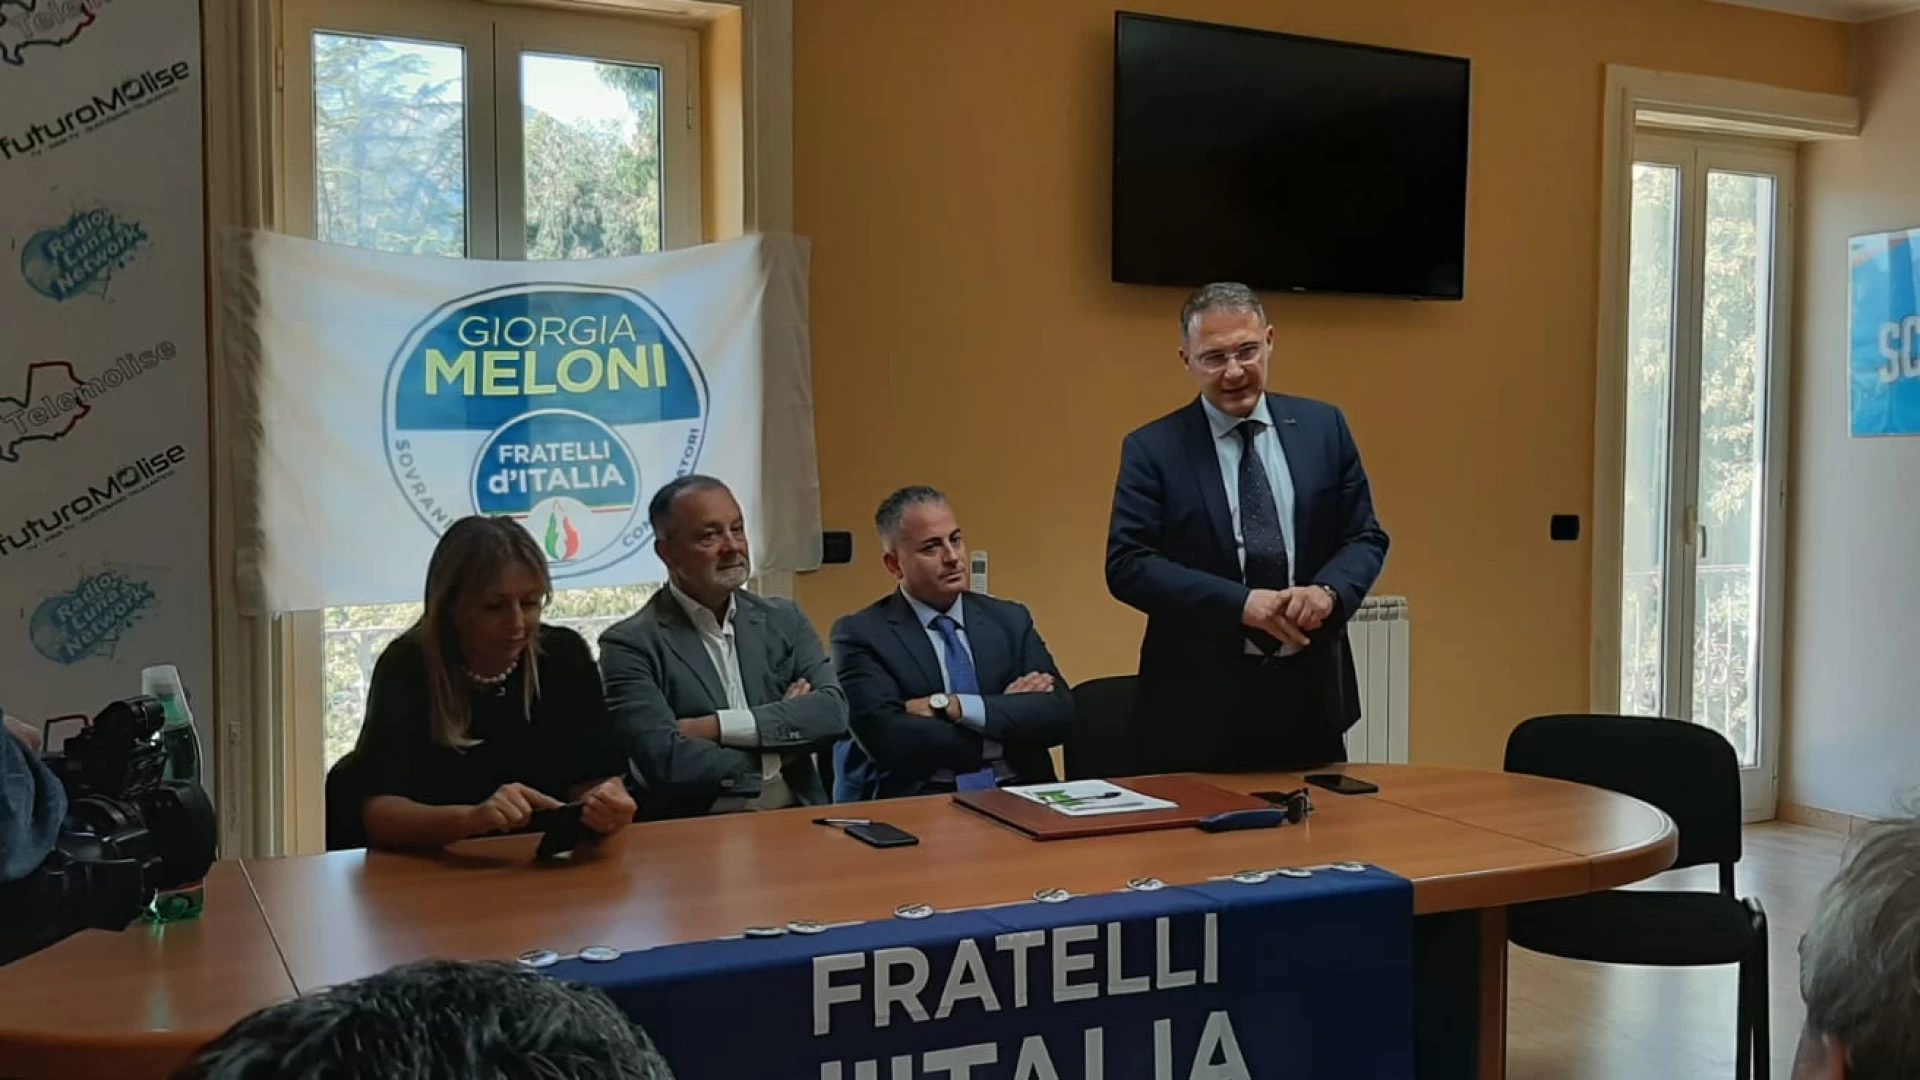 Venafro: Scarabeo confluisce in Fratelli d'Italia. "Lavorerò per una regione più libera"